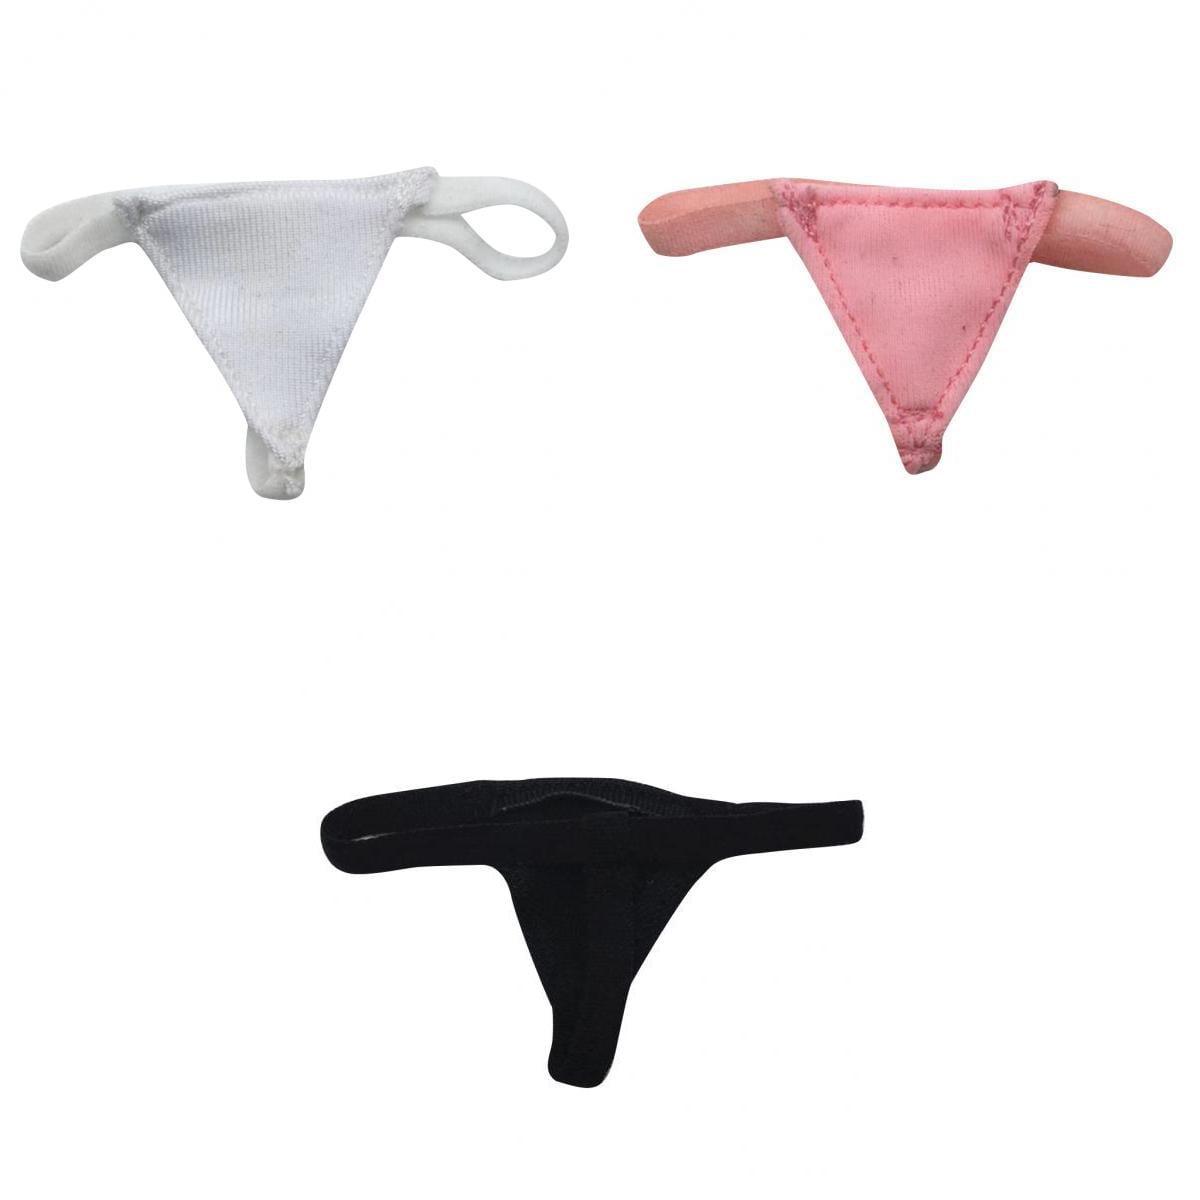 1/6 Men's Underpants Briefs for 12 inch Male Action Figure Accessories 3pcs 